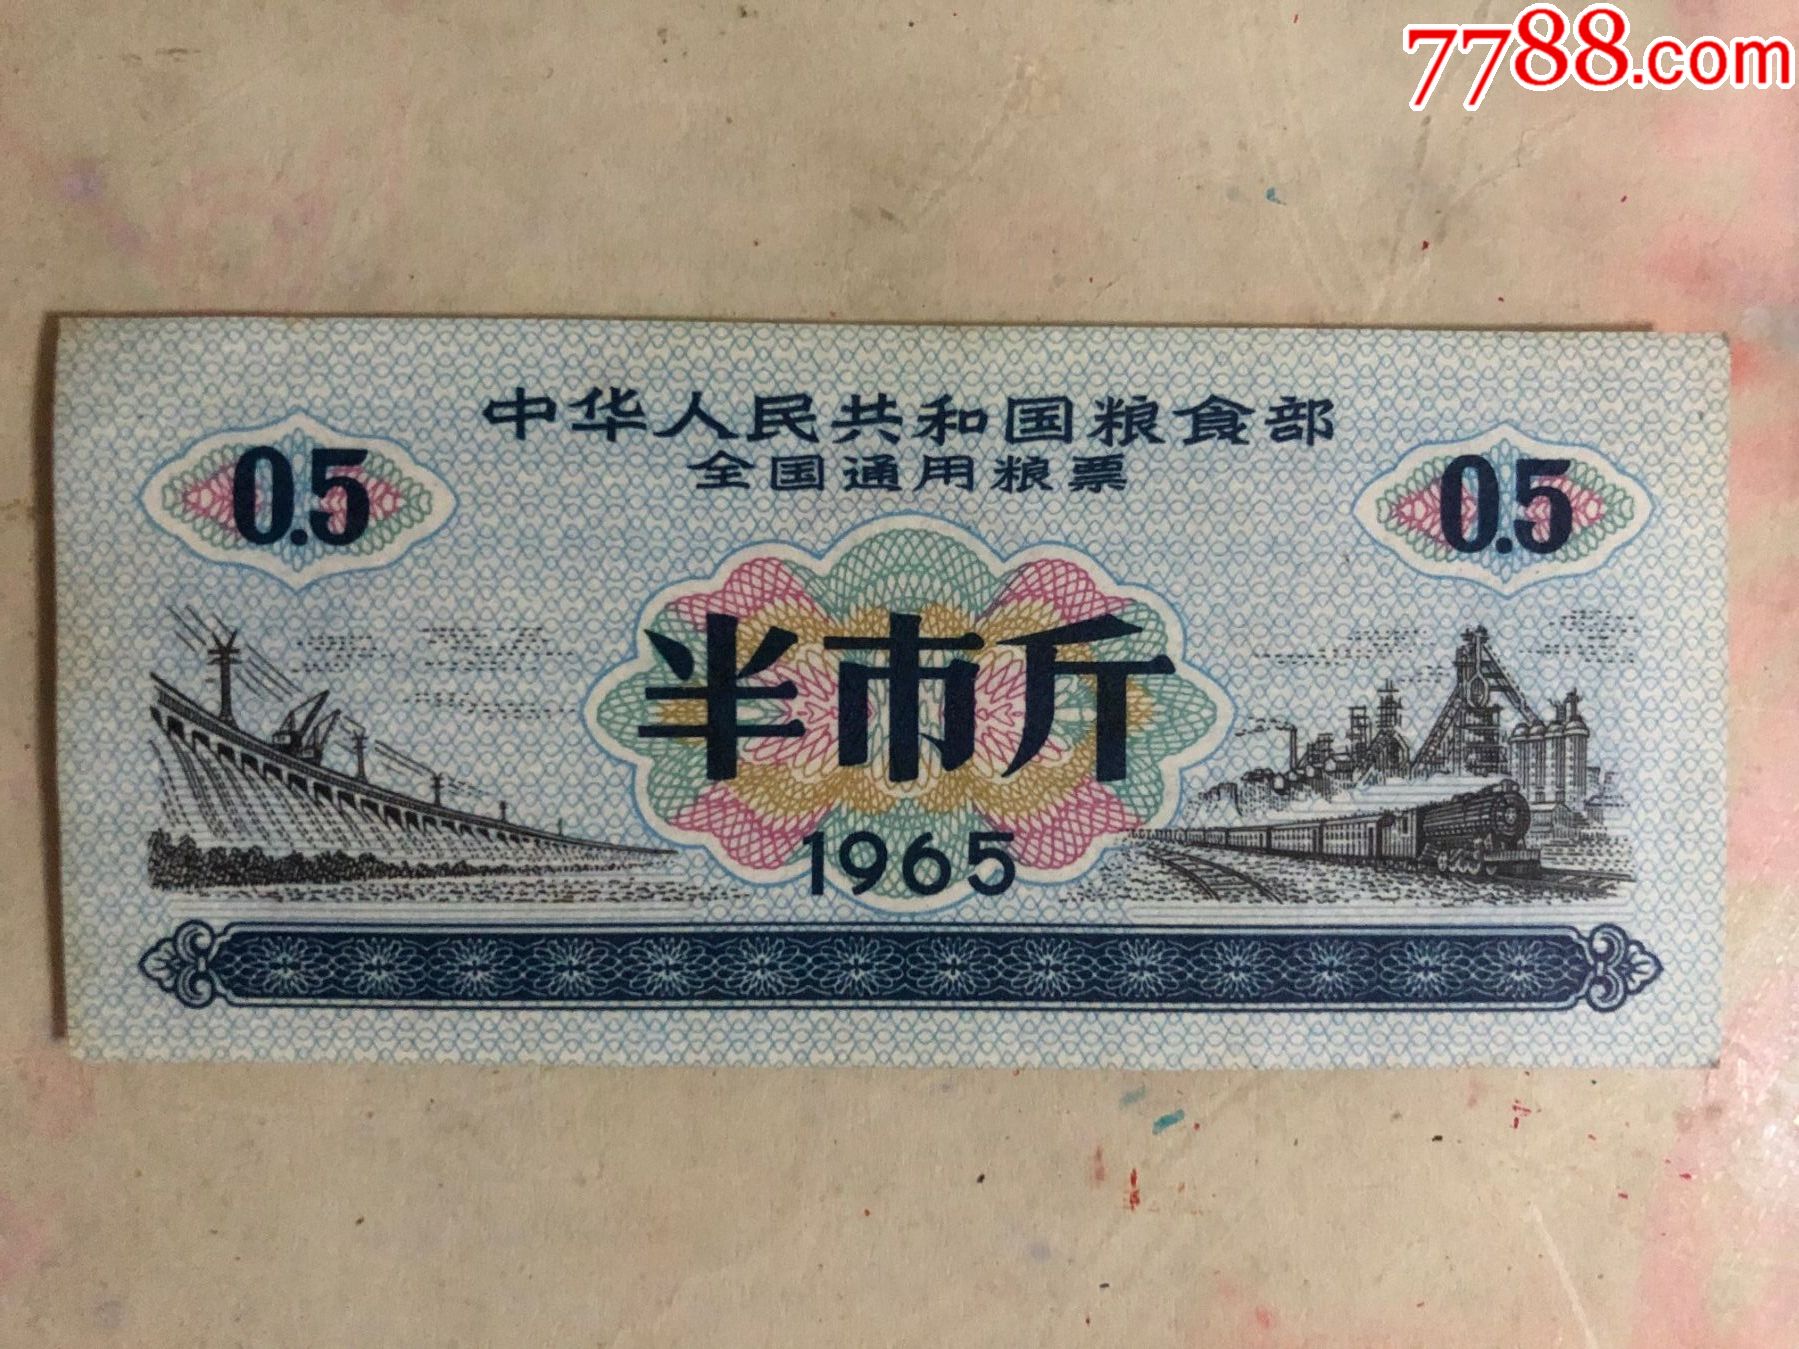 1966年粮票值钱图片